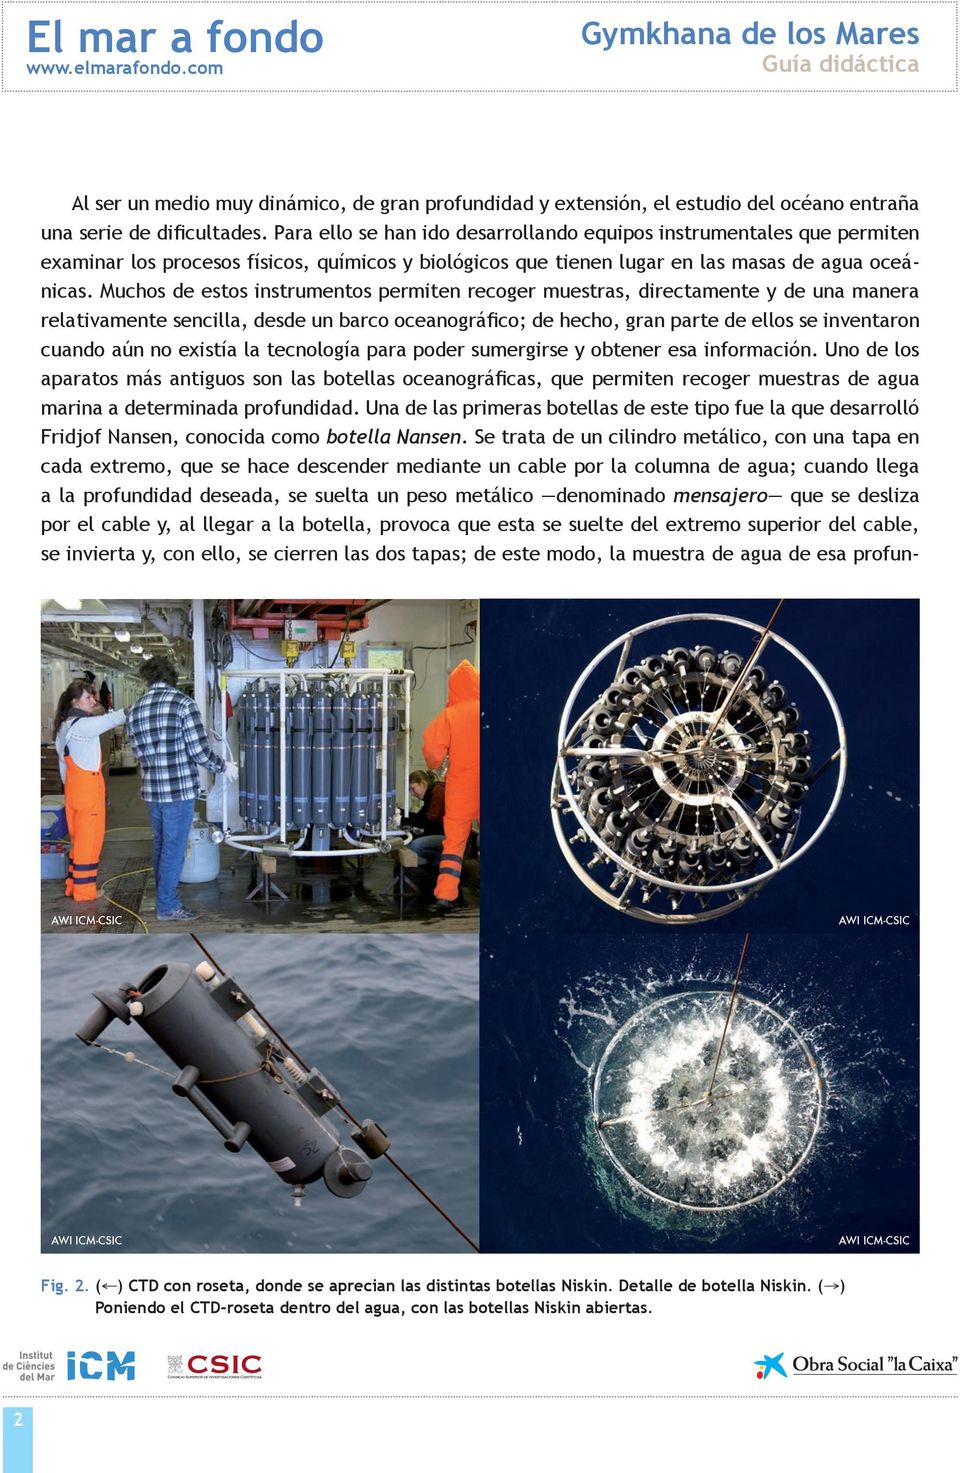 Muchos de estos instrumentos permiten recoger muestras, directamente y de una manera relativamente sencilla, desde un barco oceanográfico; de hecho, gran parte de ellos se inventaron cuando aún no